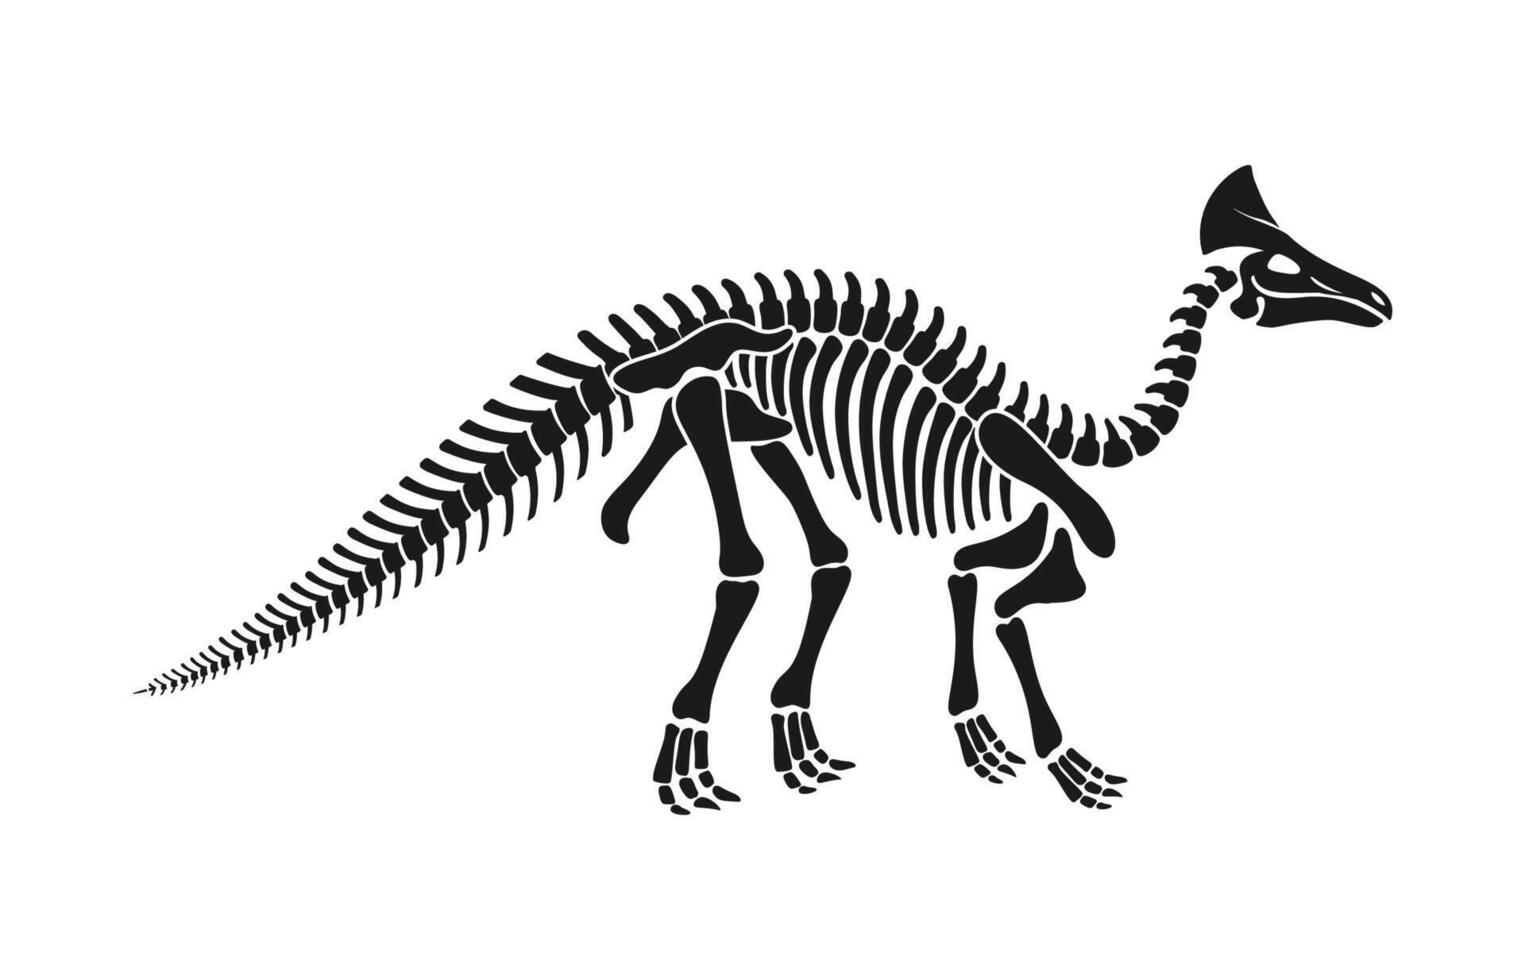 olorotitan dinosaurio esqueleto fósil, dino huesos vector